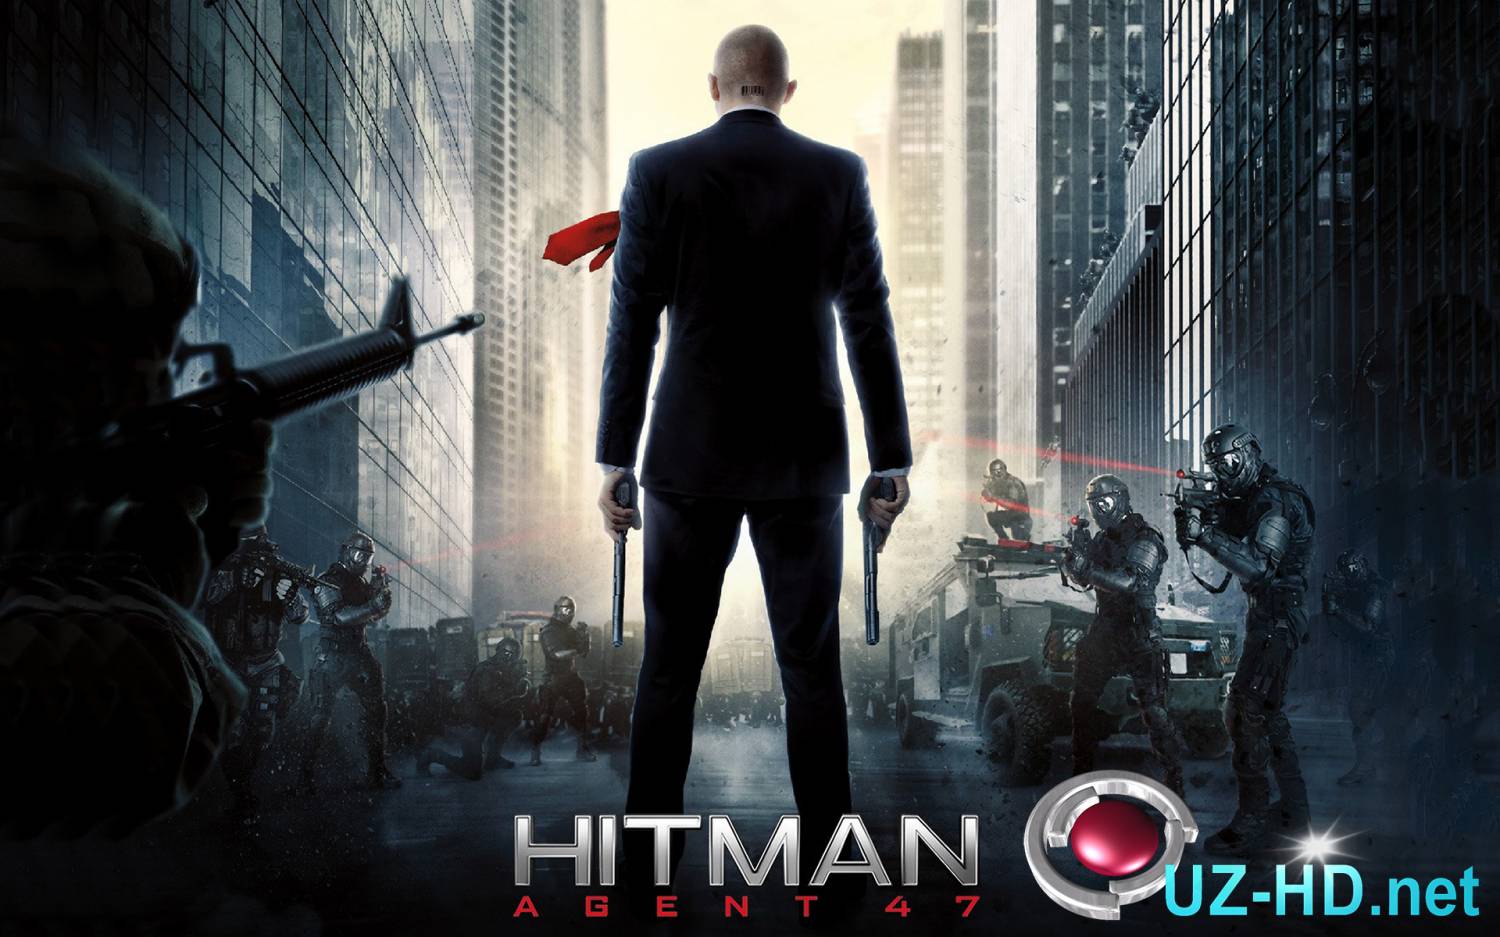 Агент 47 смотреть онлайн (фильм боевик 2015) Hitman: Agent 47 - смотреть онлайн